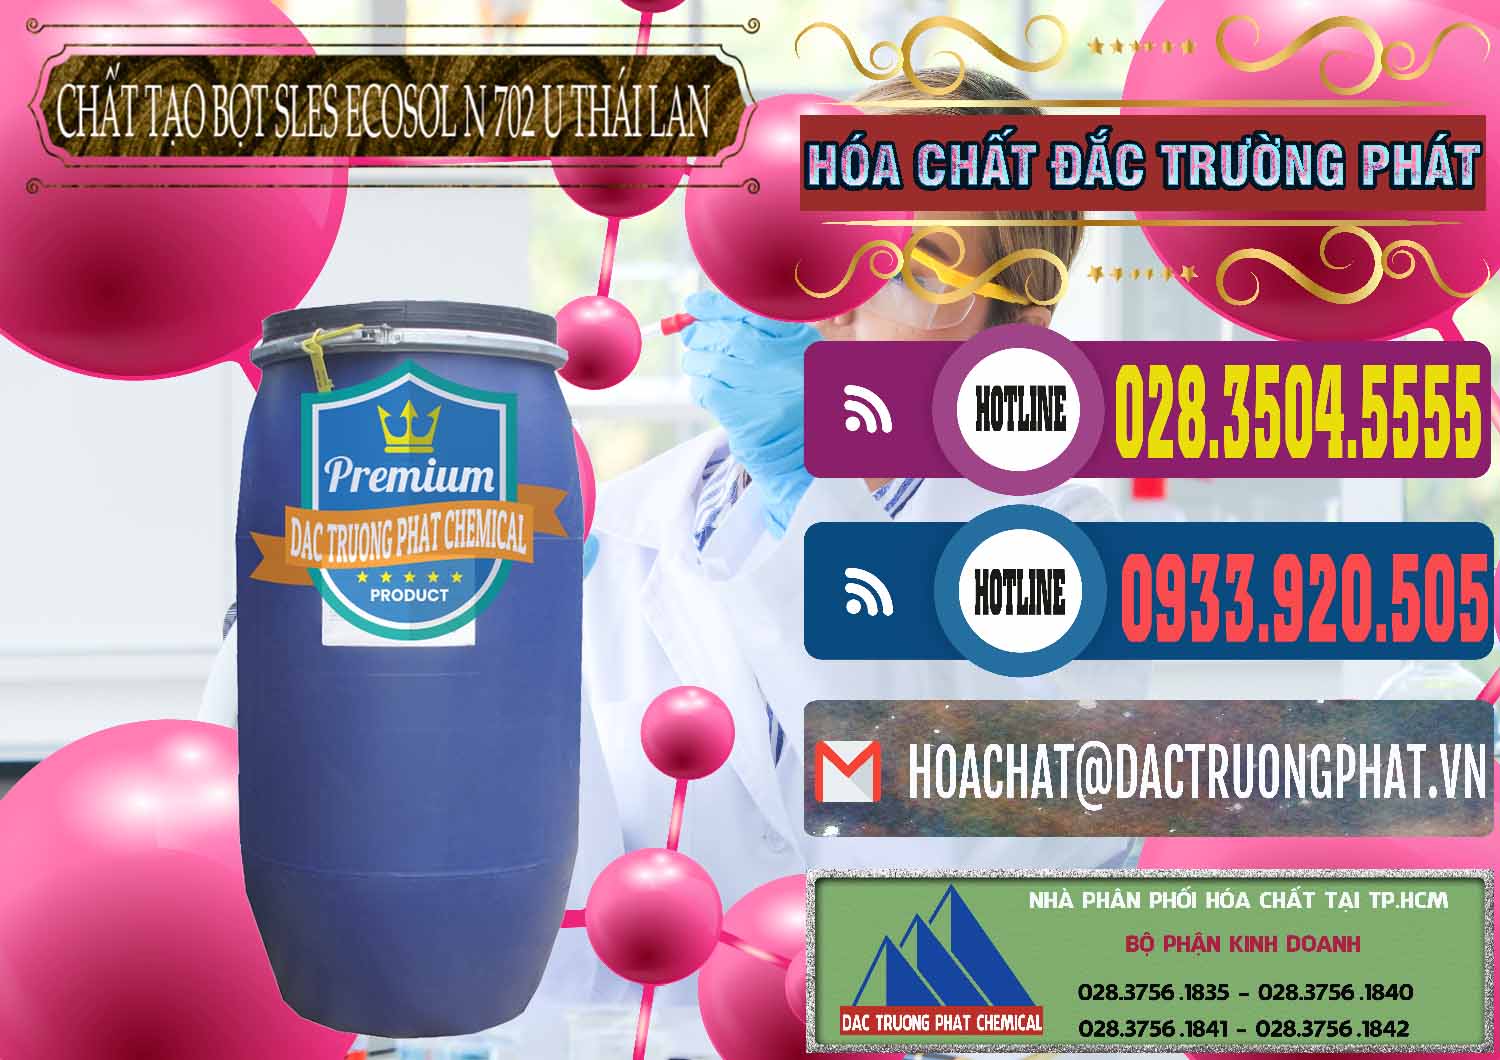 Bán ( cung cấp ) Chất Tạo Bọt Sles - Sodium Lauryl Ether Sulphate Ecosol N 702 U Thái Lan - 0254 - Đơn vị nhập khẩu _ phân phối hóa chất tại TP.HCM - muabanhoachat.com.vn